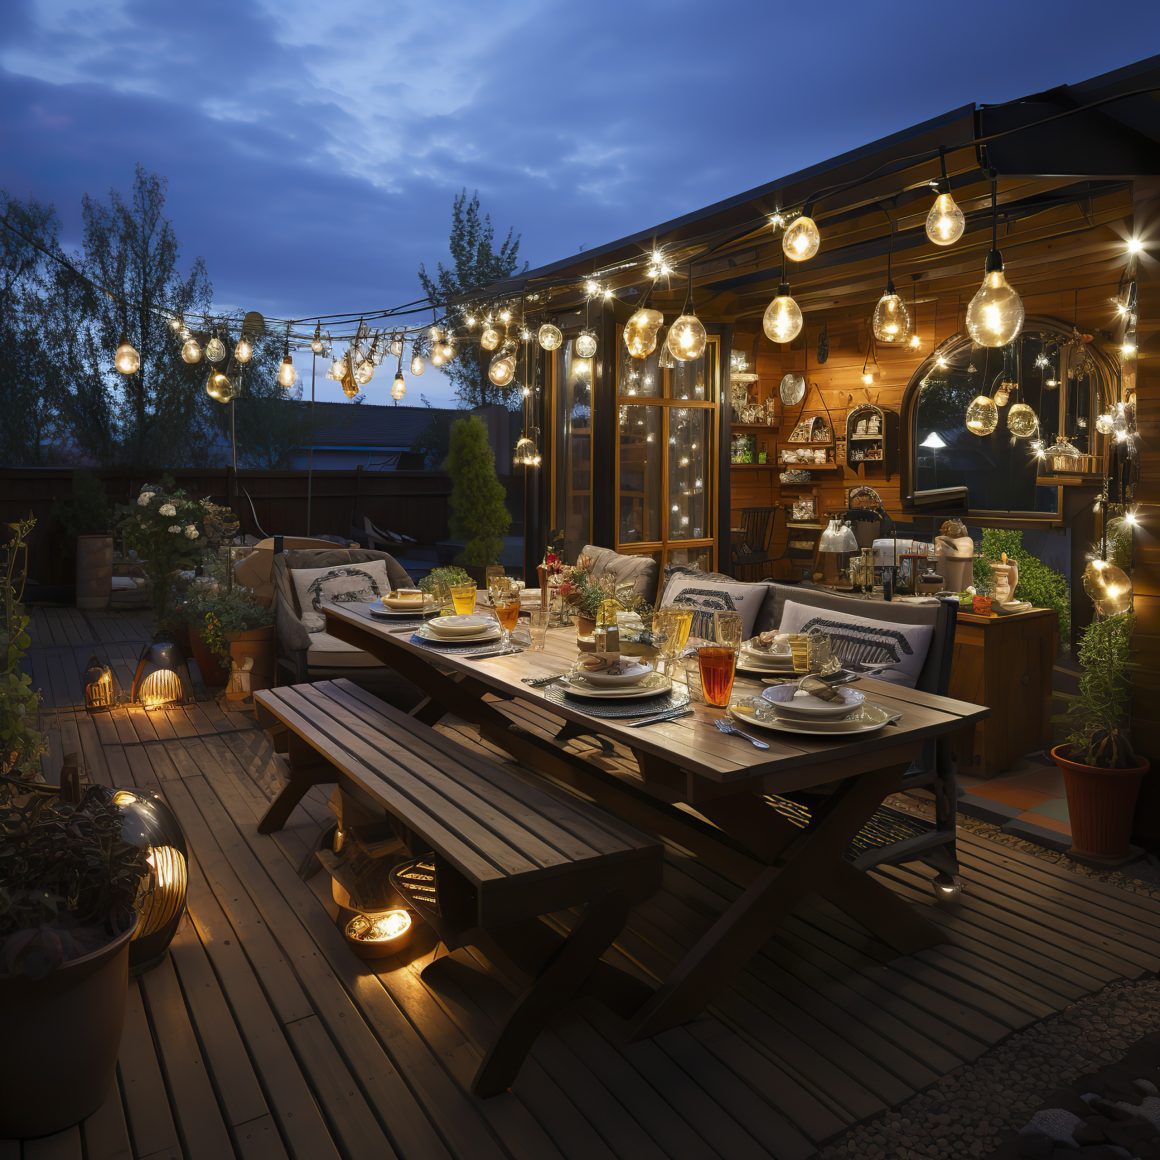 terrasse festive illuminée avec des guirlandes et lanternes pour une ambiance chaleureuse